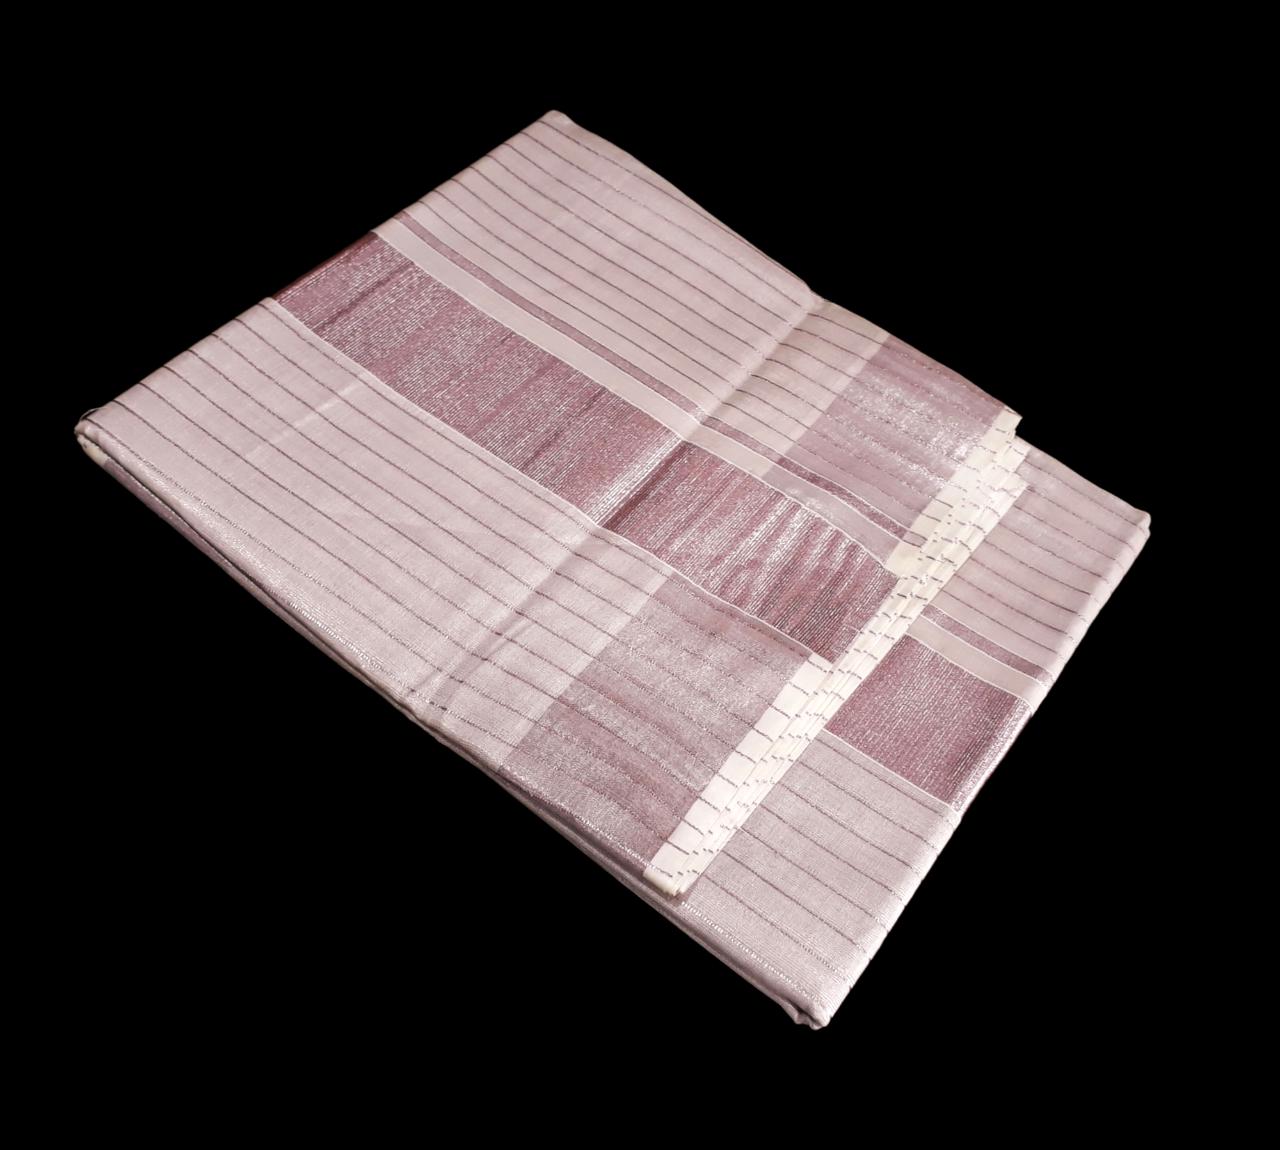 Kerala tissue cotton silver strips saree